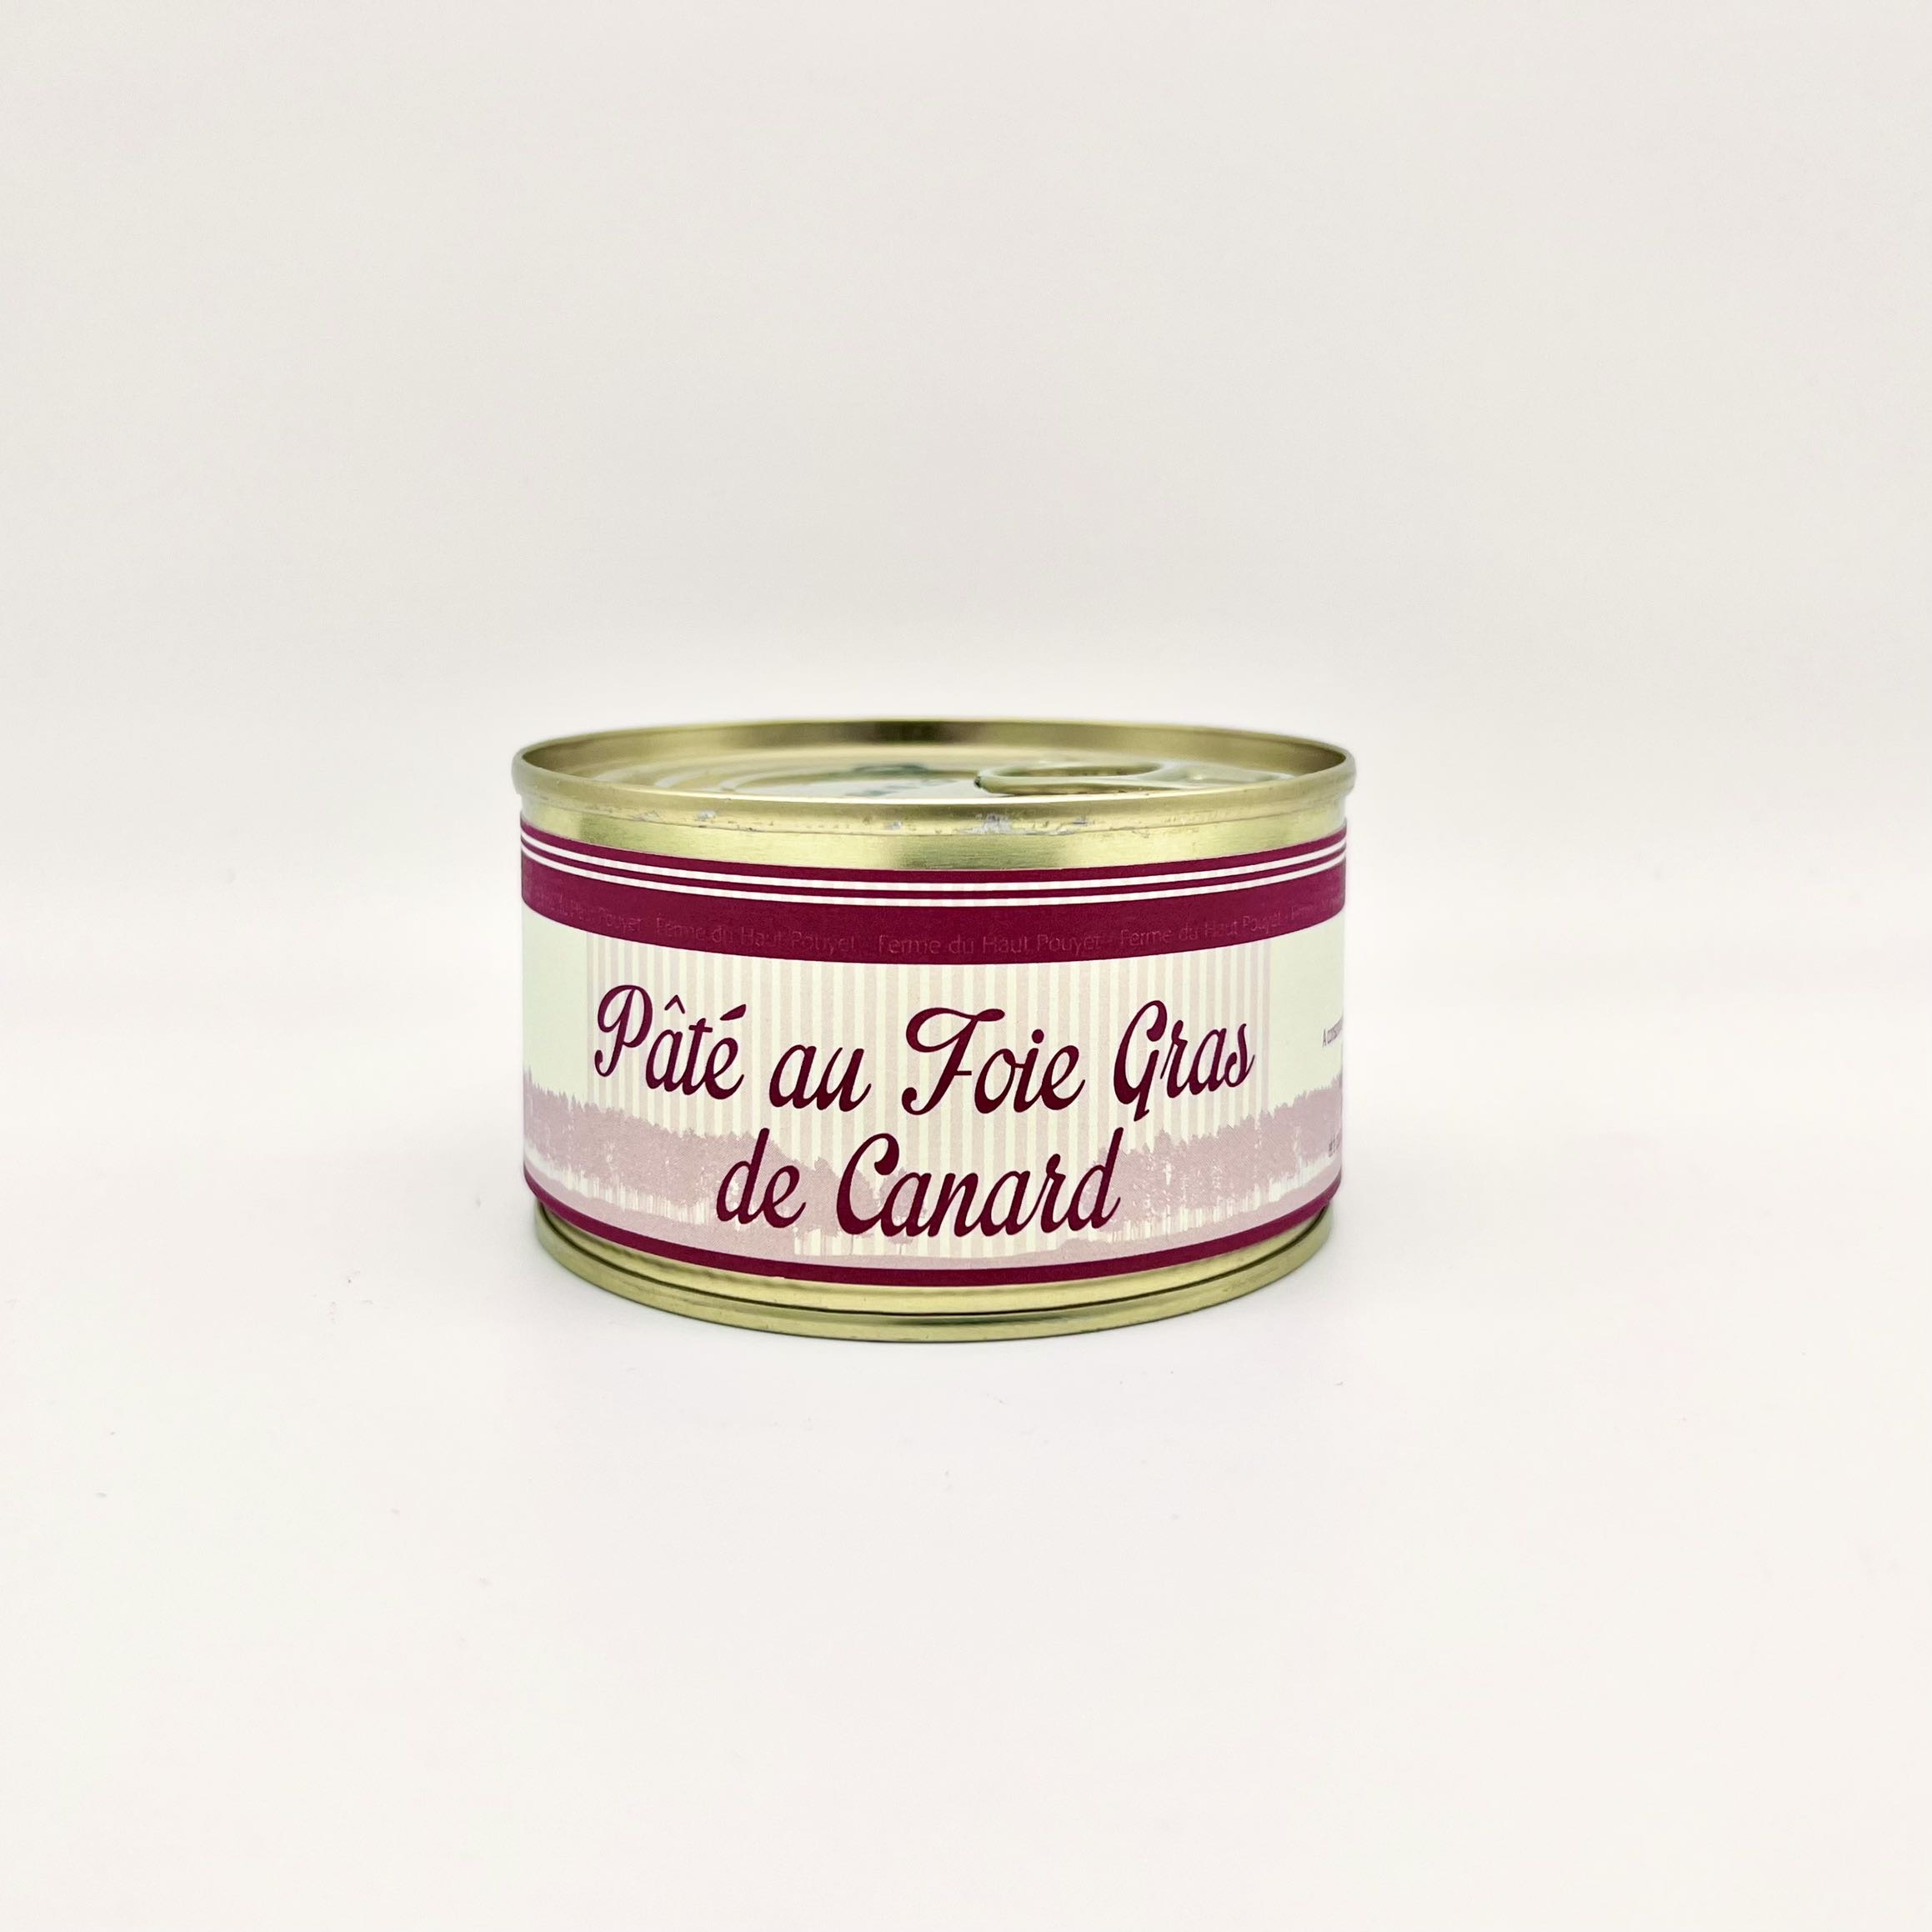 Pat au foie gras de canard 200g